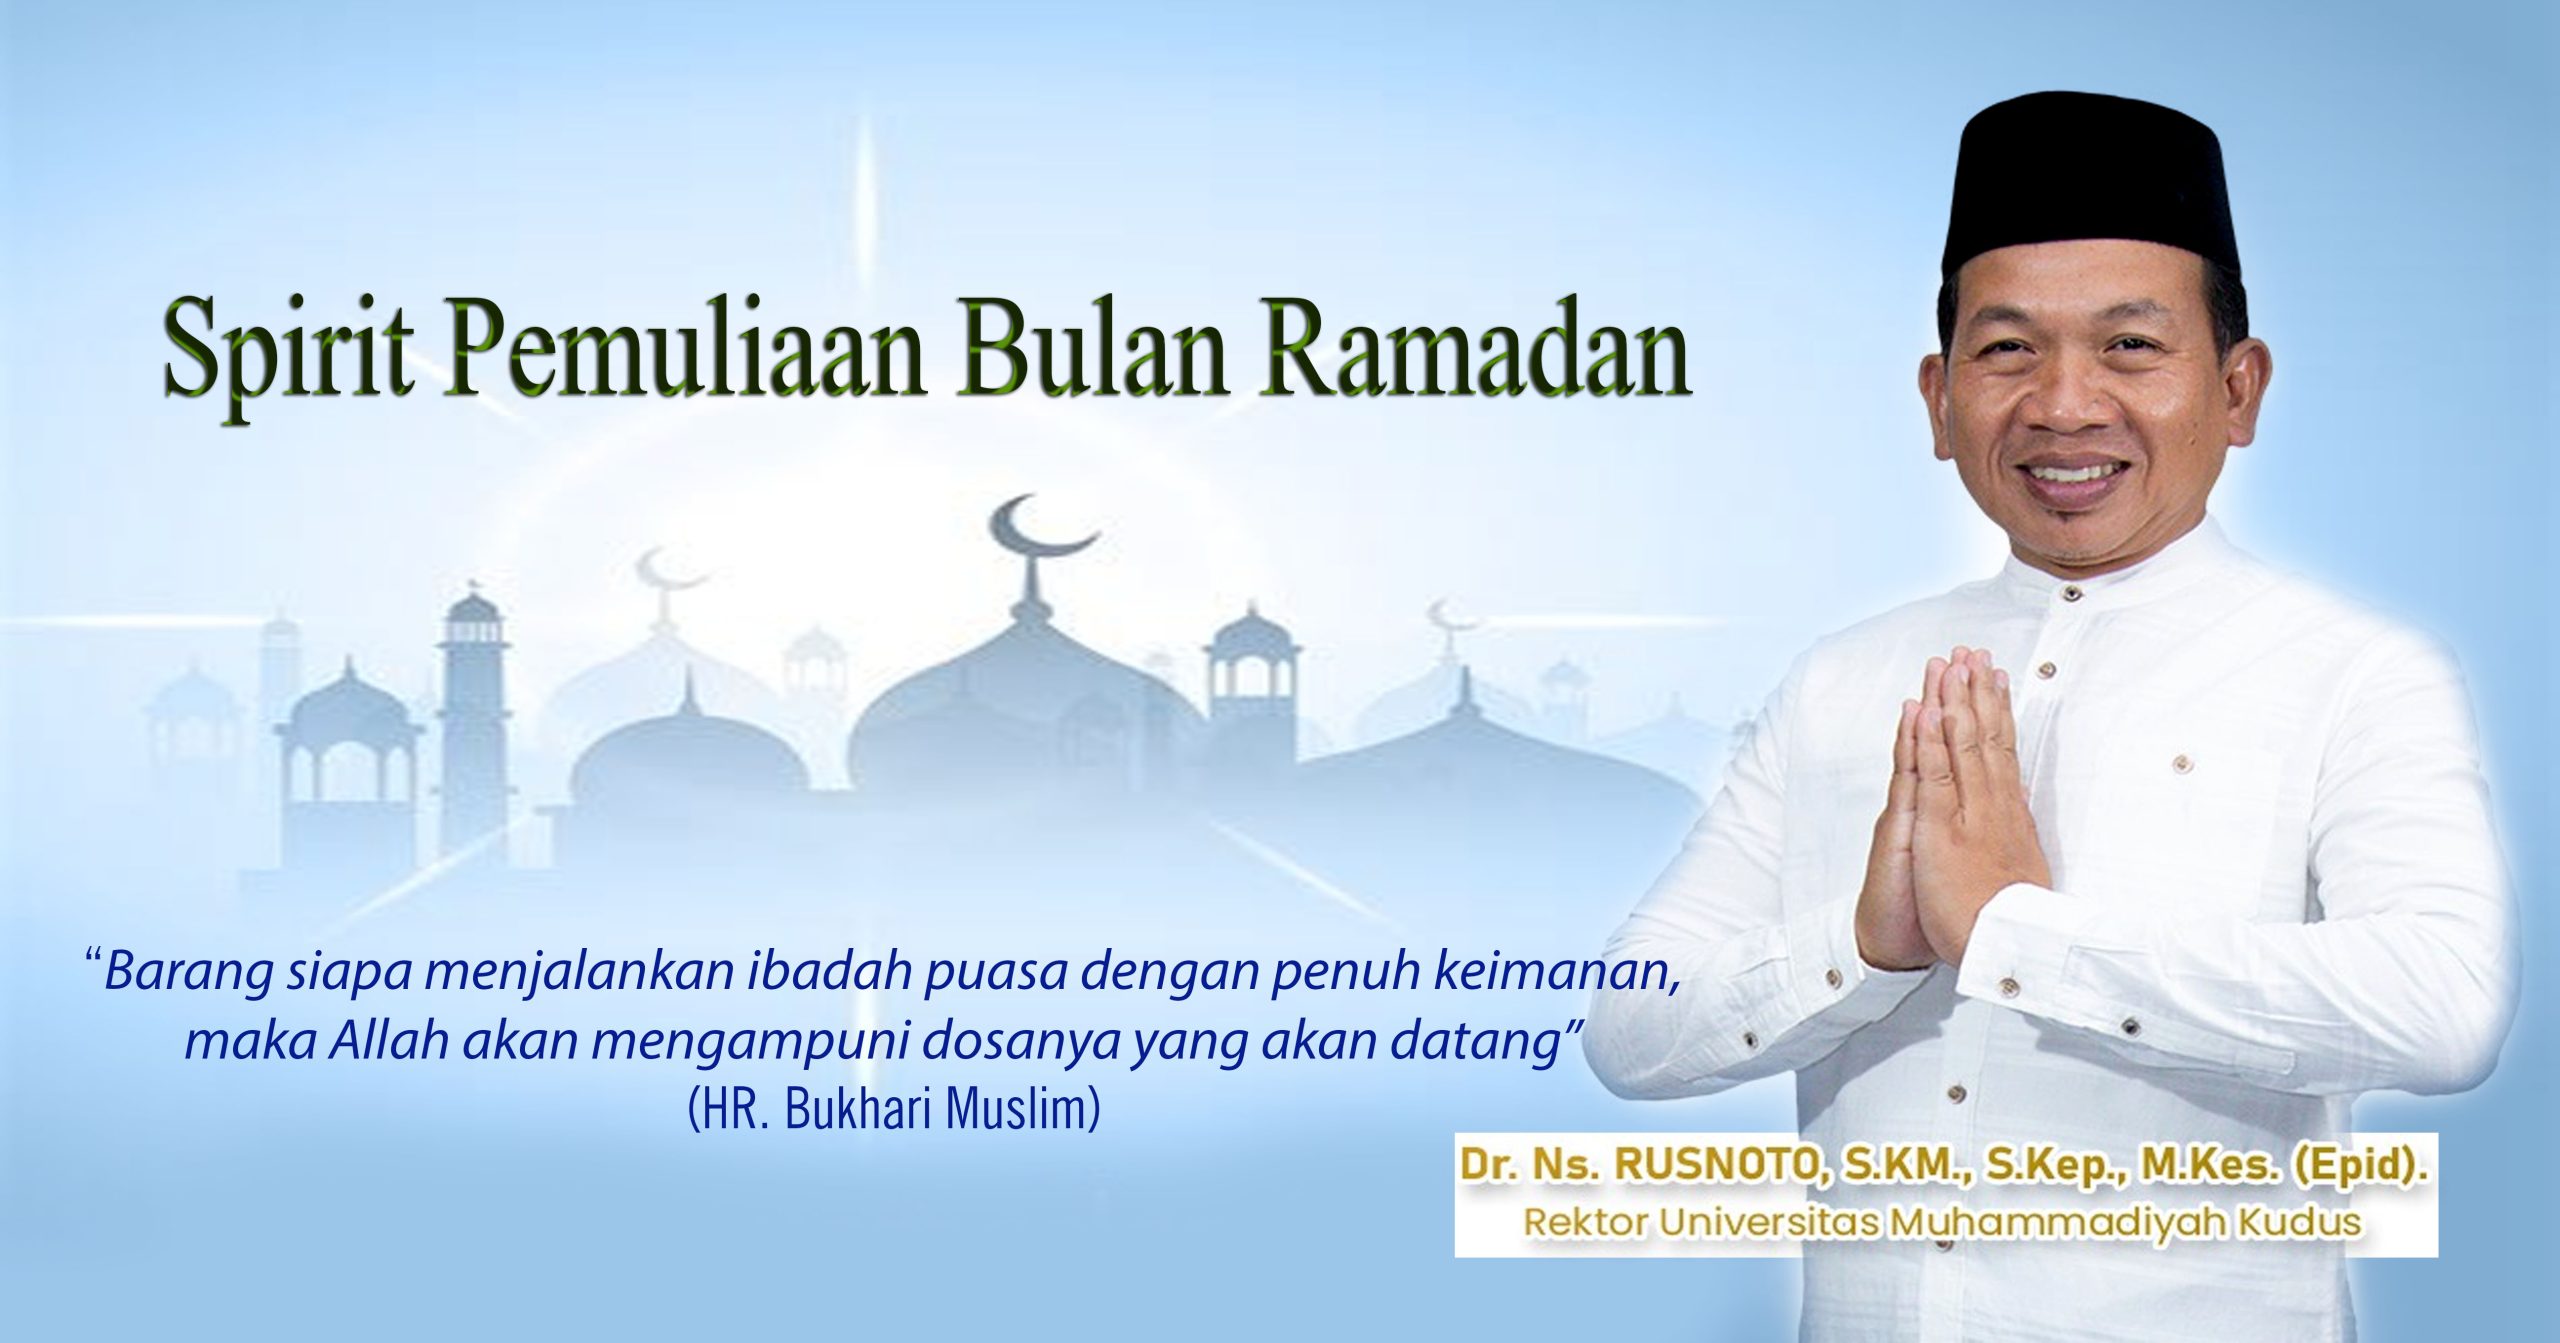 Spirit Pemuliaan Bulan Ramadhan